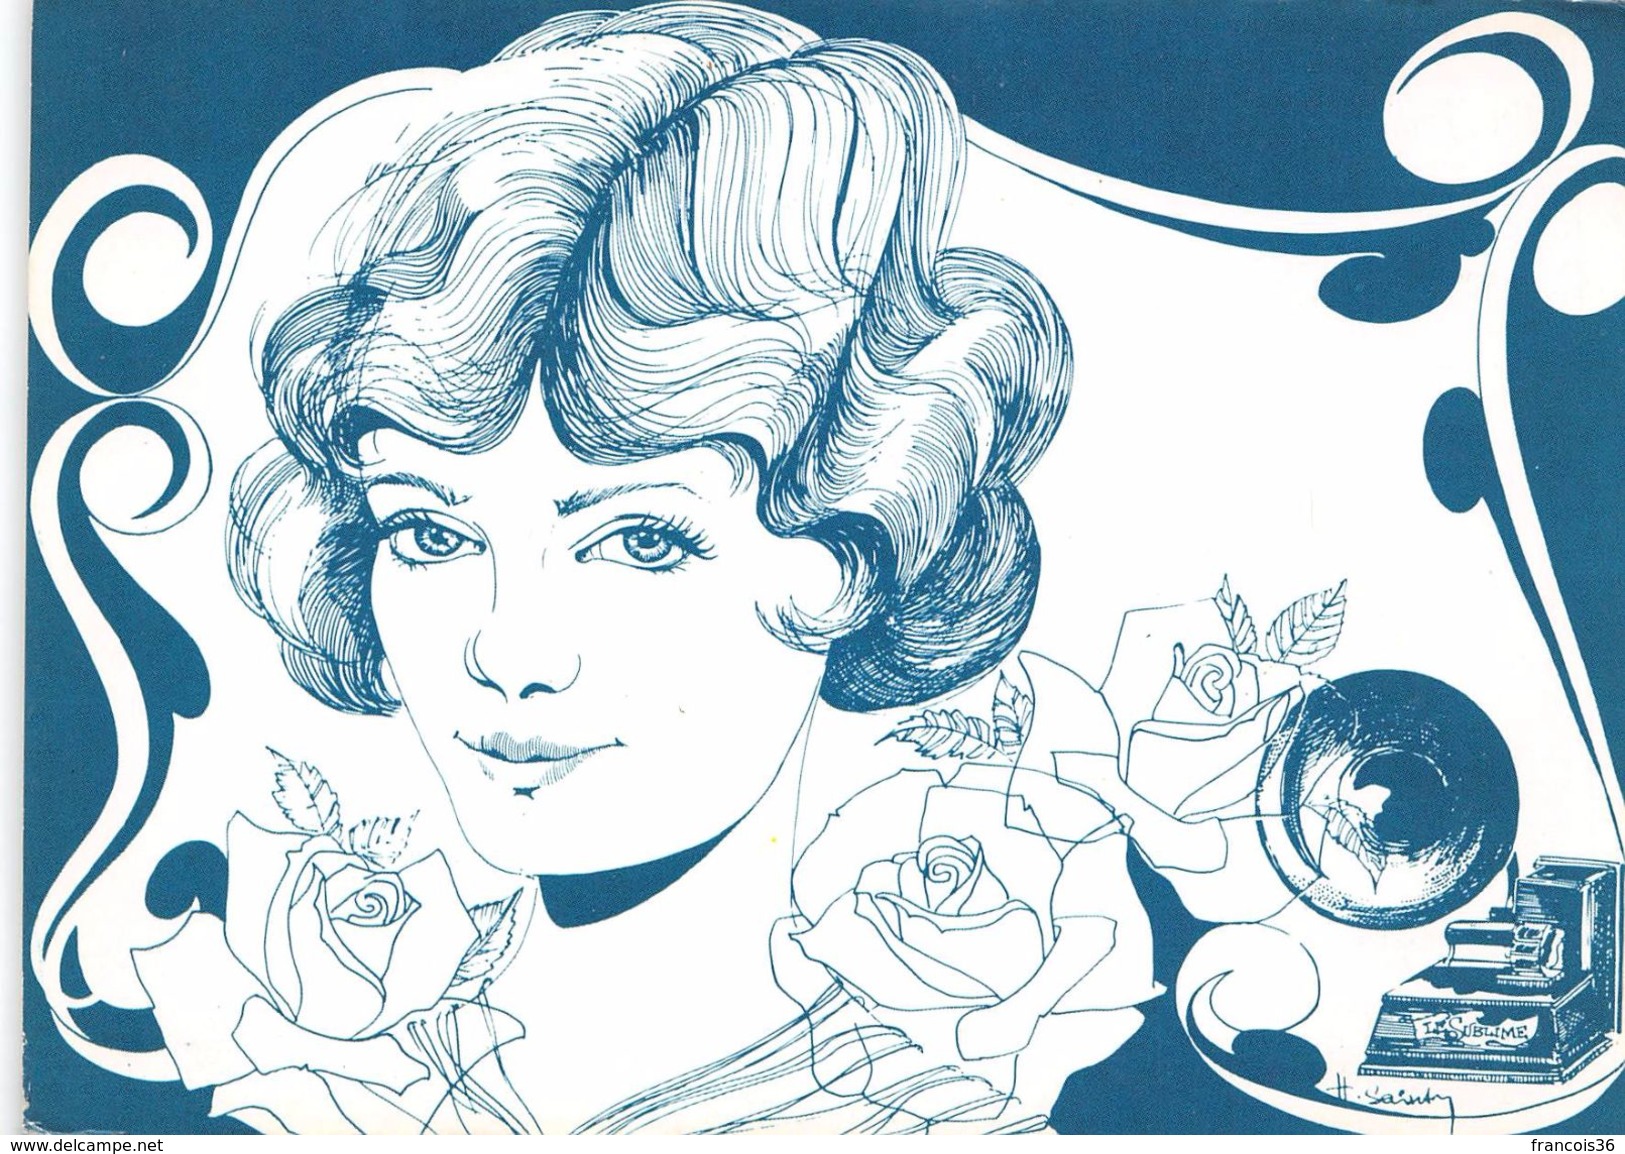 Lot de 14 cartes - Art Nouveau - romantisme beauté féminine - illustrations